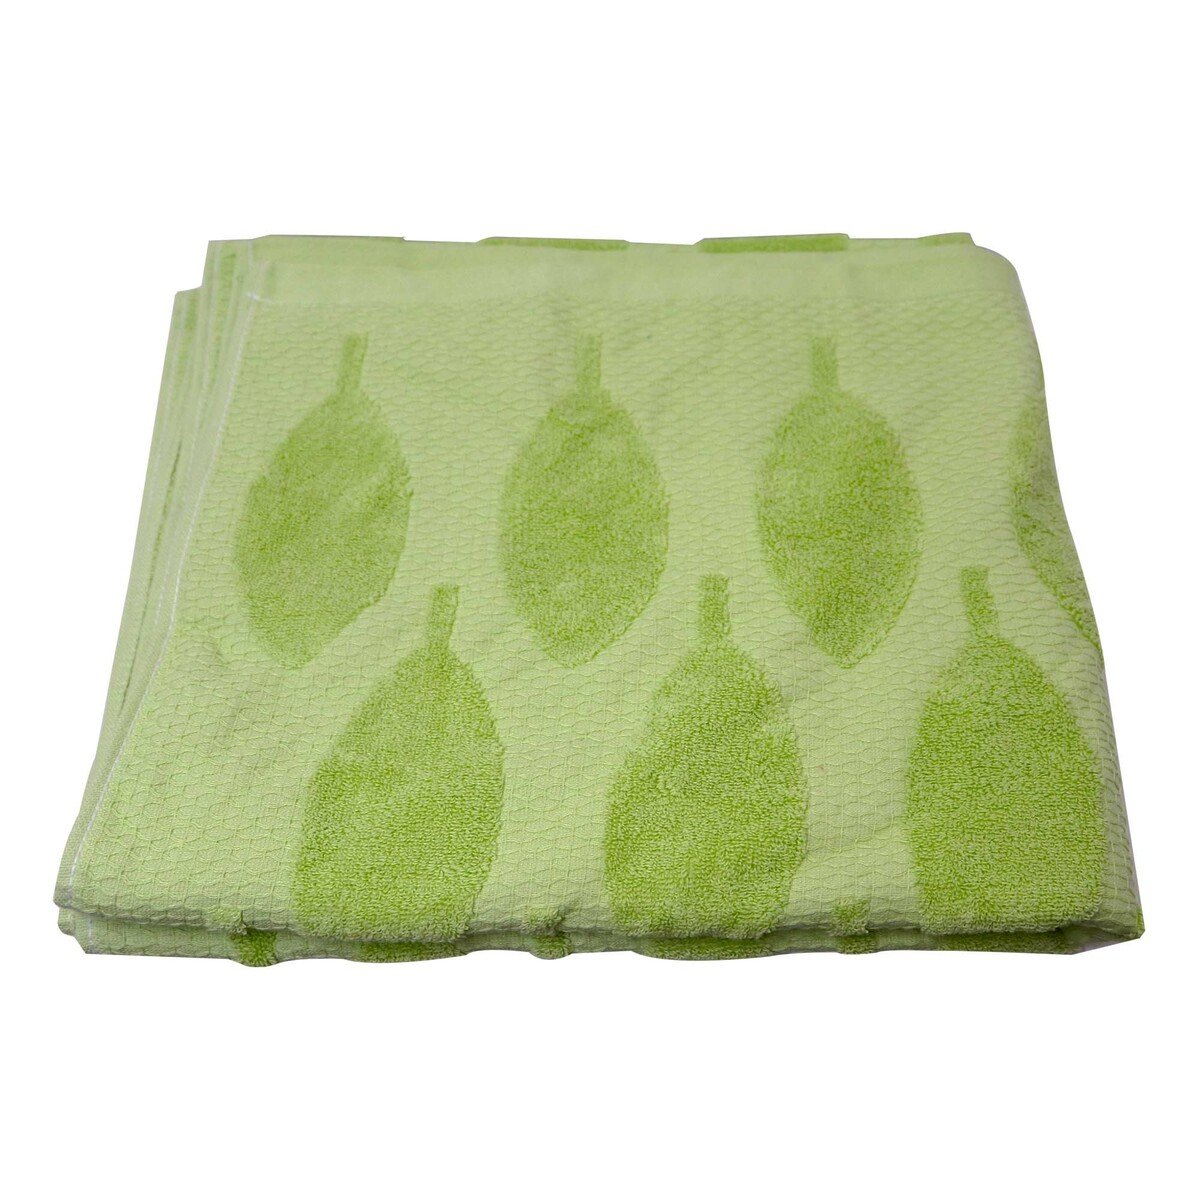 Maple Leaf Bath Towel P0-52 70x140cm Assorted color